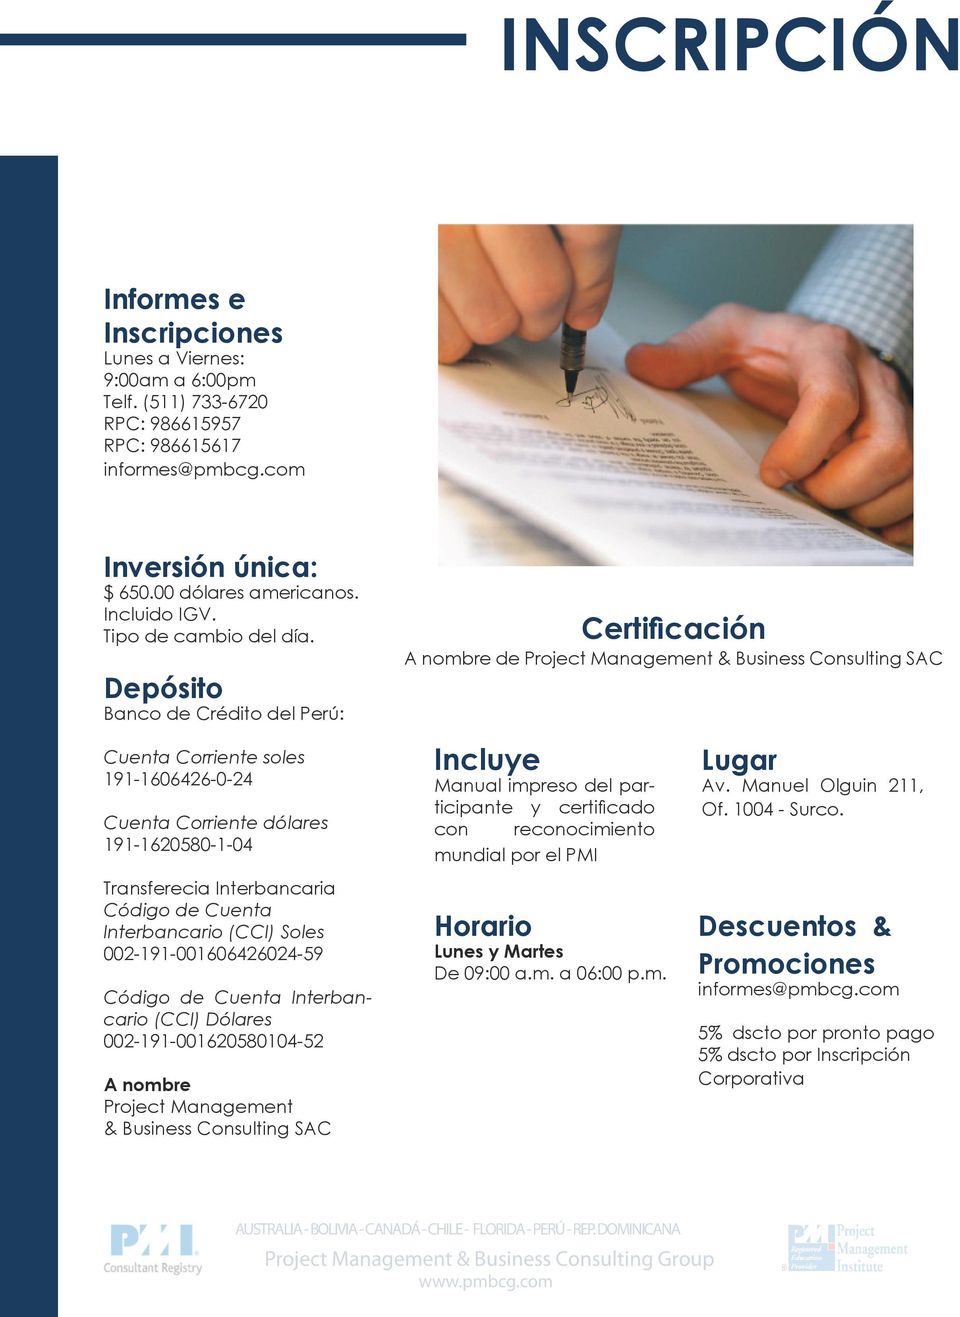 Depósito Banco de Crédito del Perú: Certificación A nombre de Project Management & Business Consulting SAC Cuenta Corriente soles 191-1606426-0-24 Cuenta Corriente dólares 191-1620580-1-04